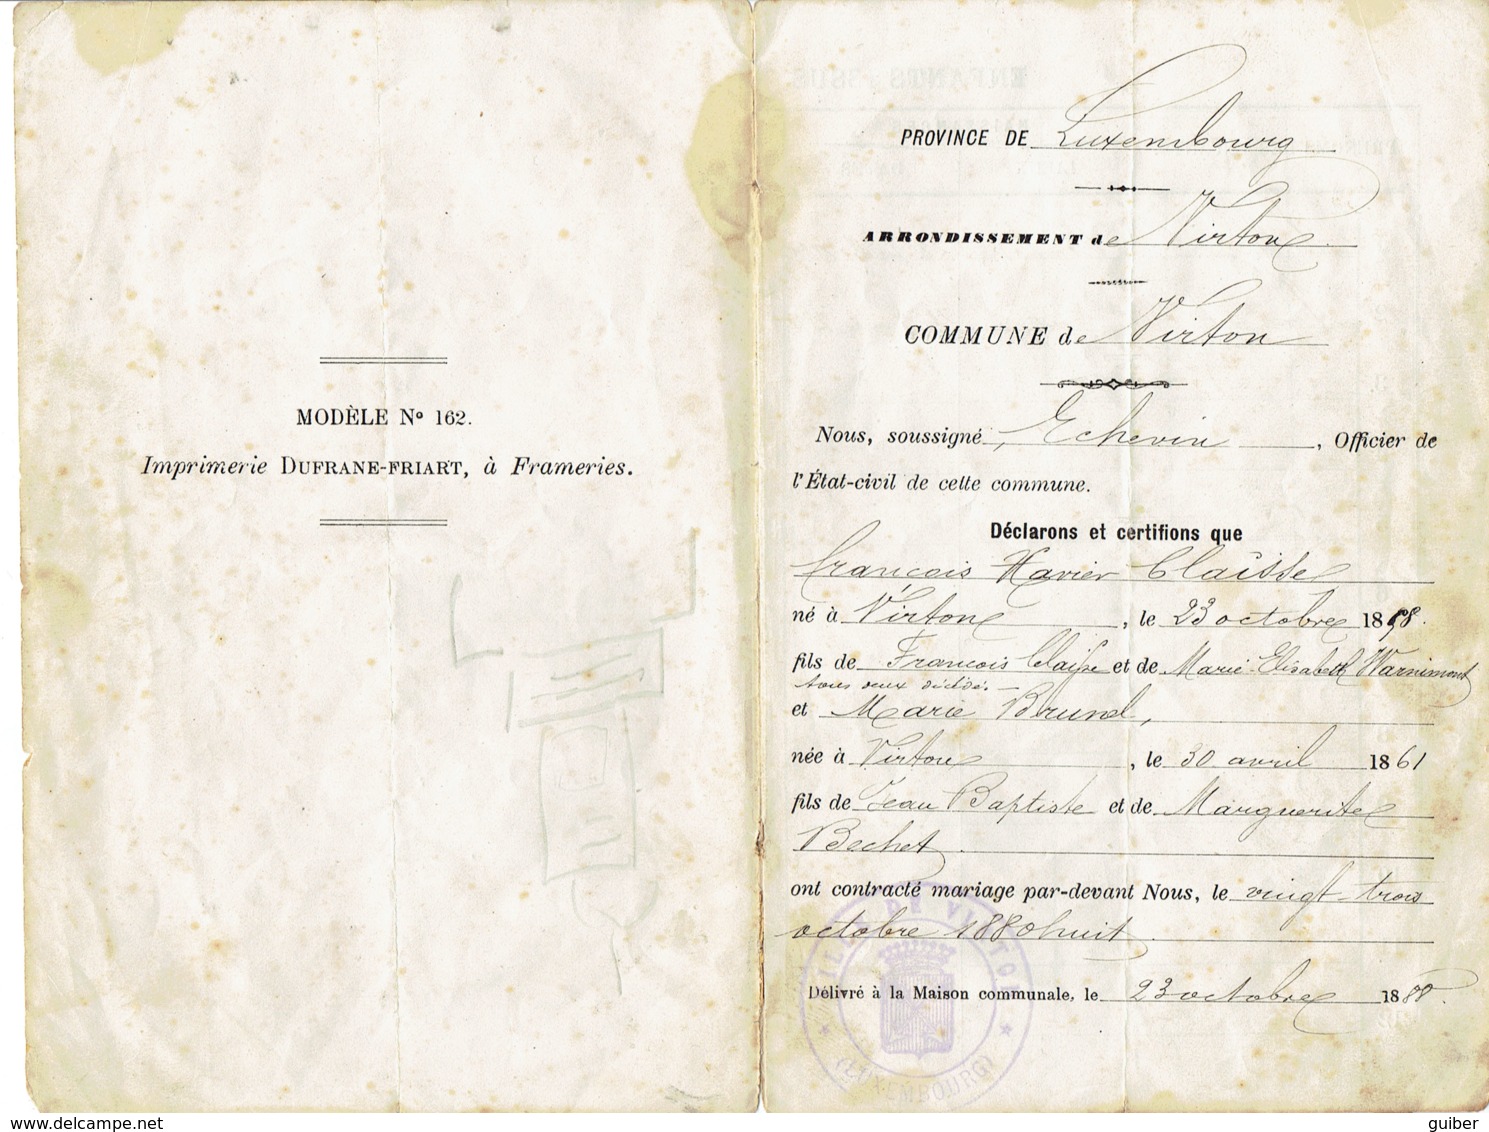 Ancien Carnet De Mariage Virton 1888 Famille Claisse Brunel - Documents Historiques